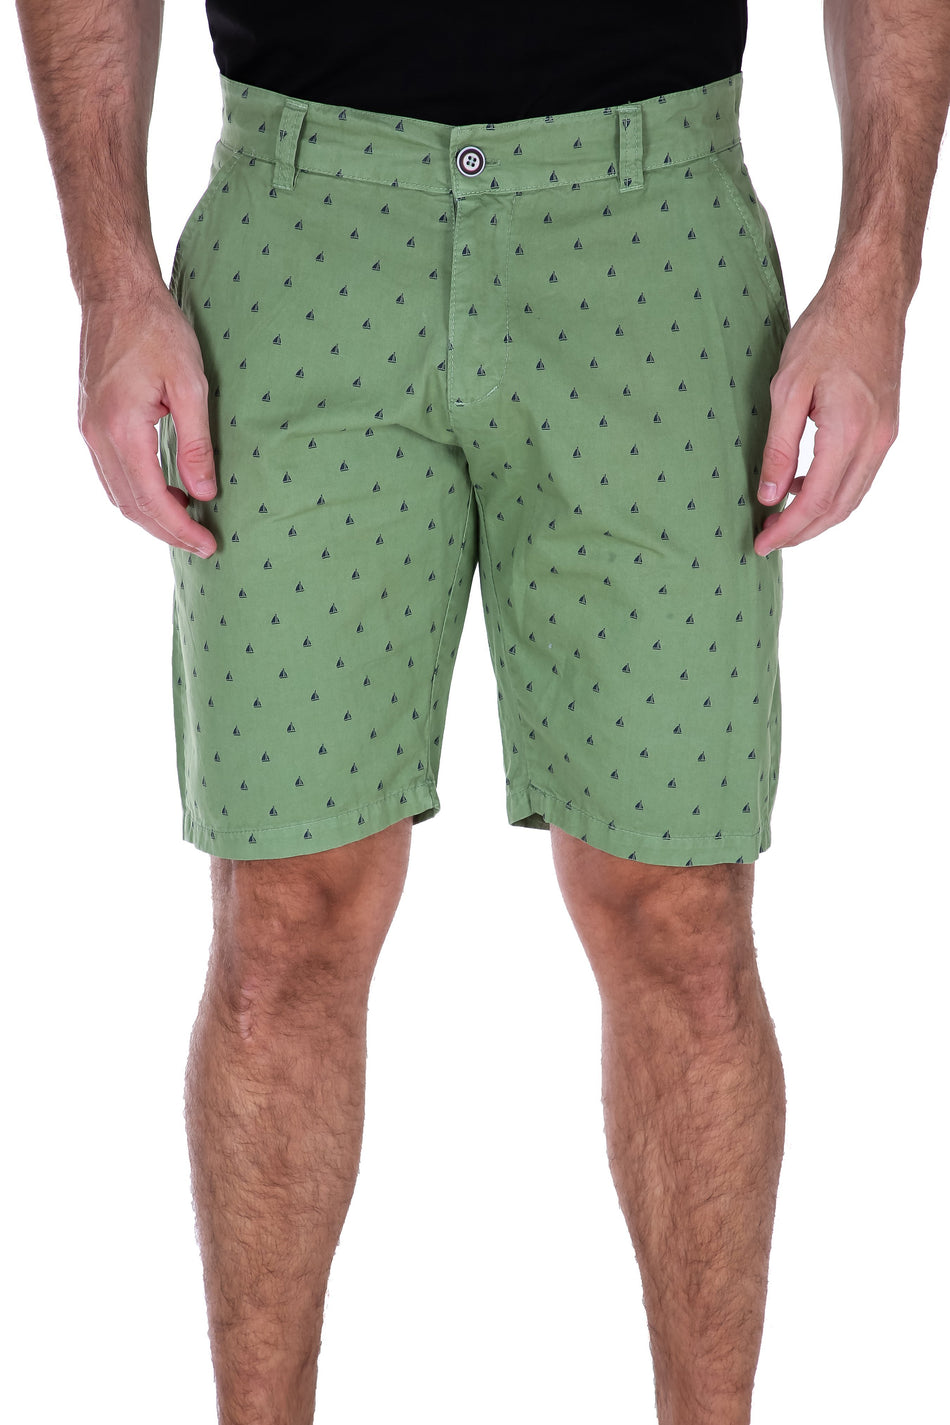 183101 - Green Fashion Shorts